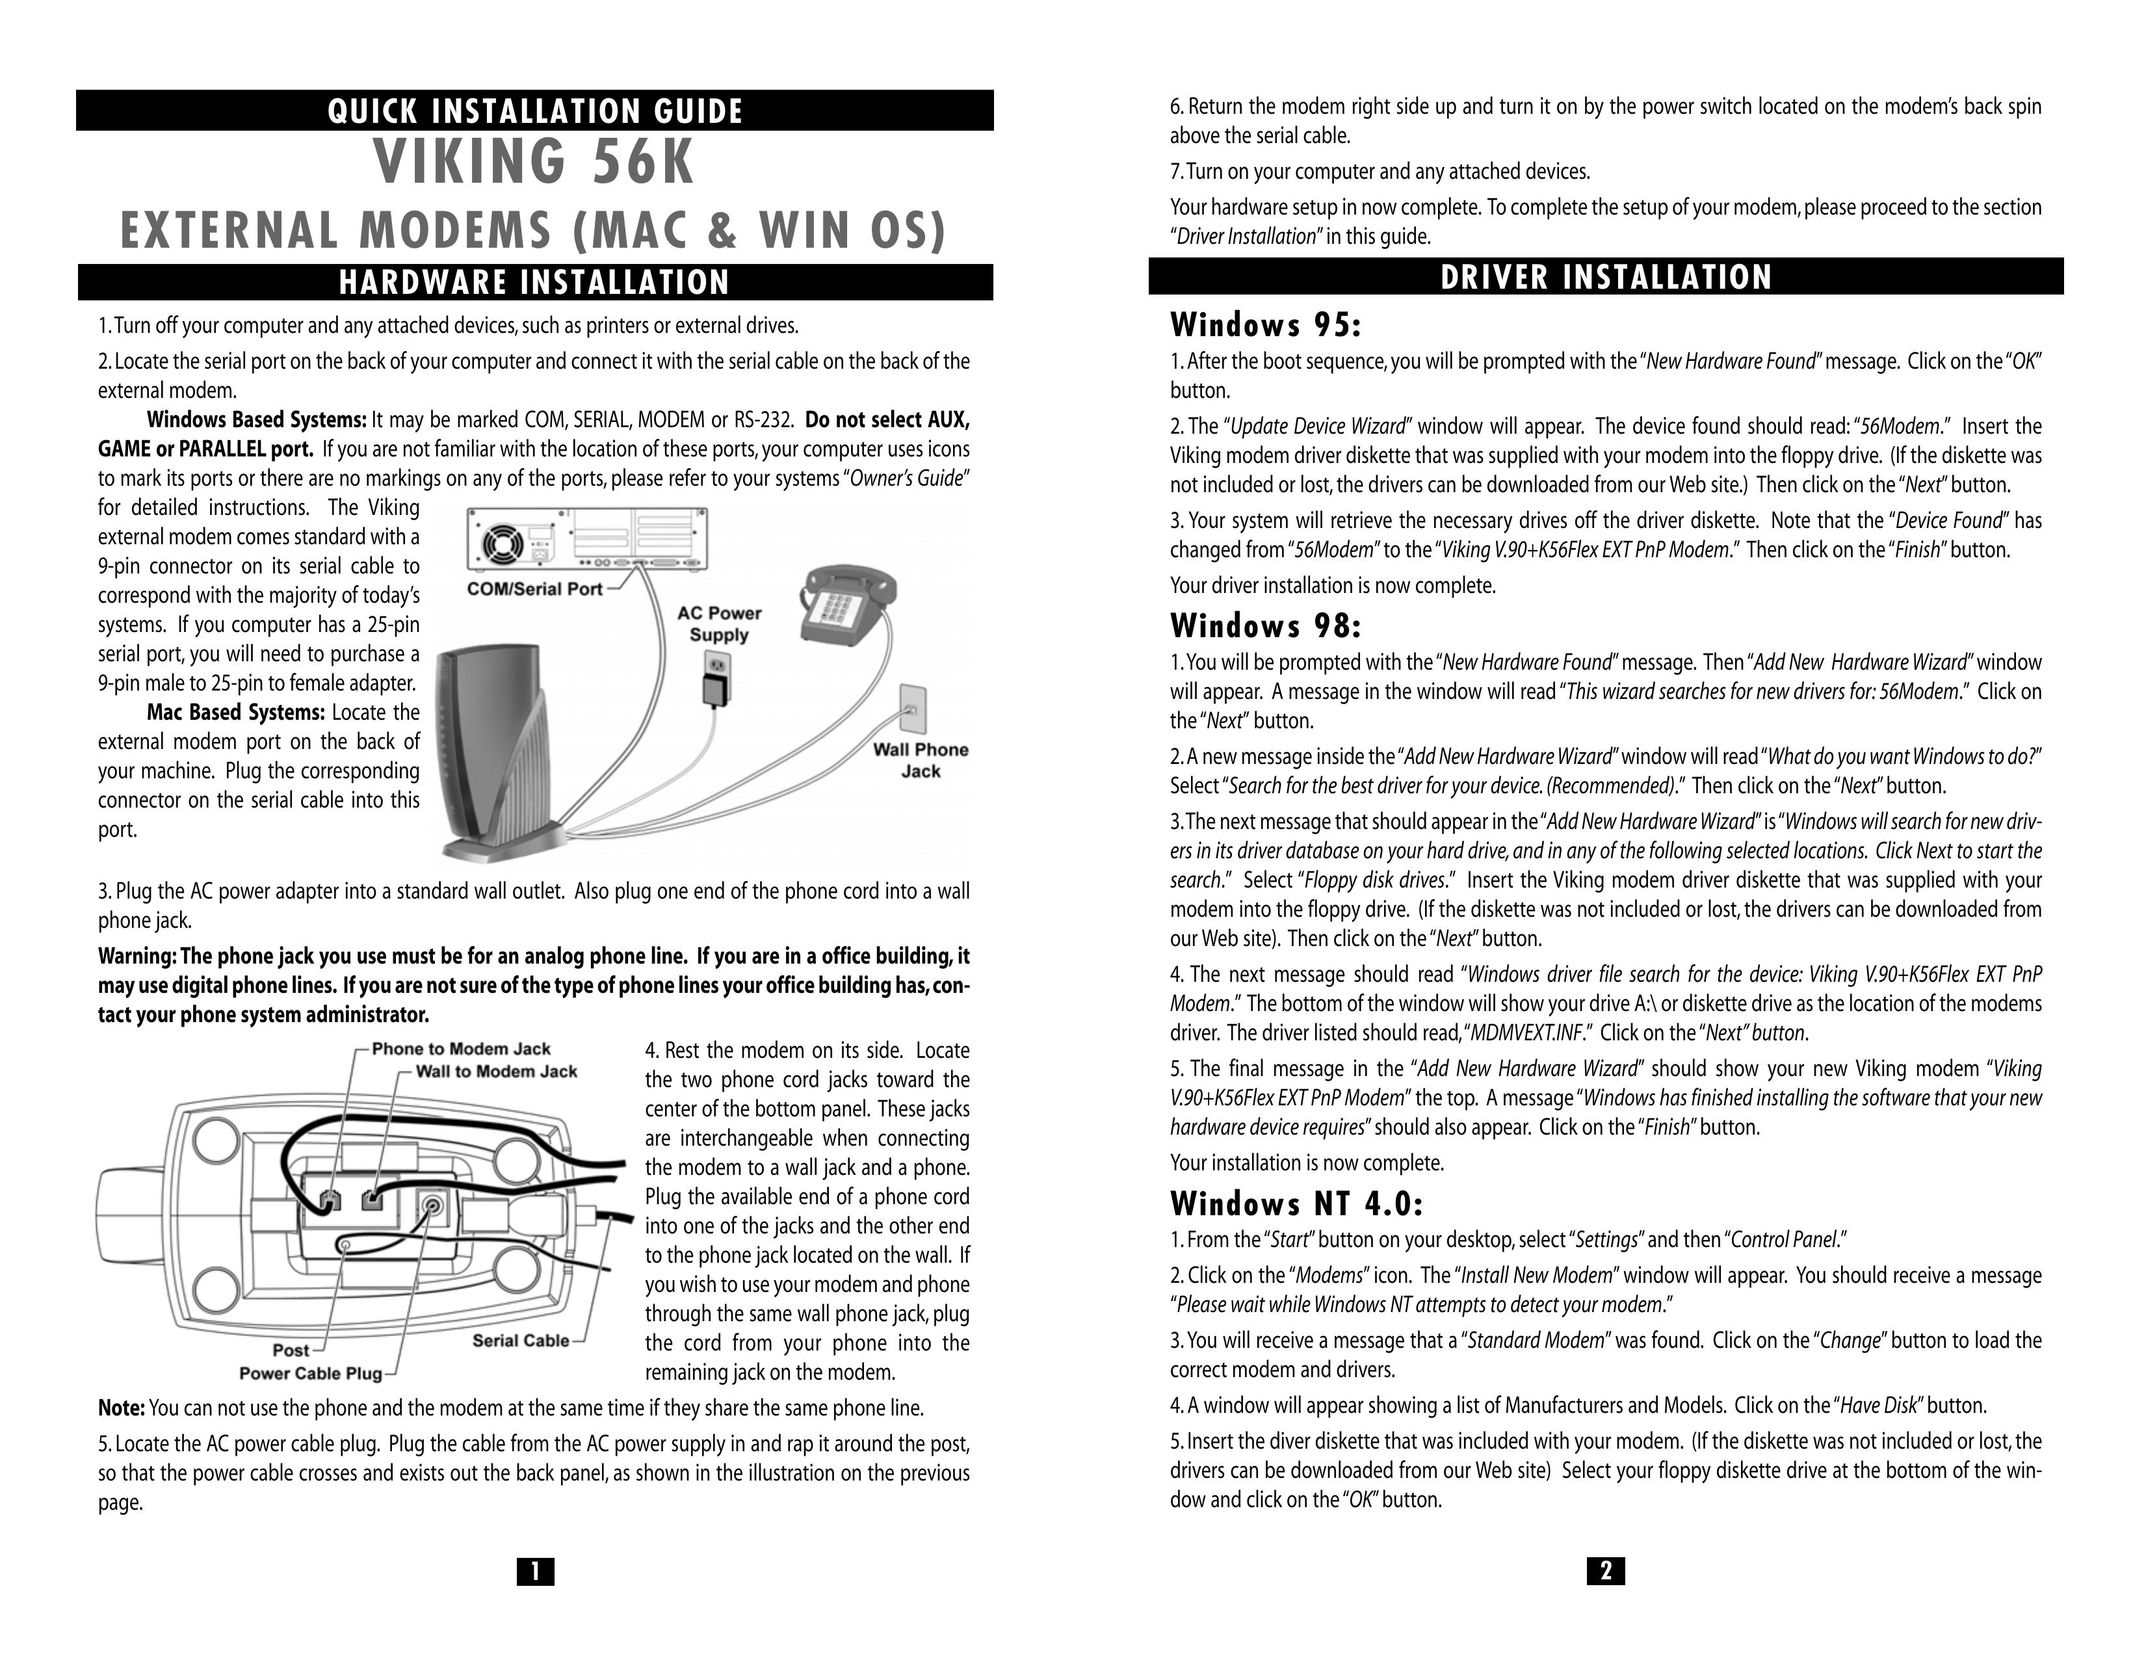 Viking Electronics 56K Answering Machine User Manual